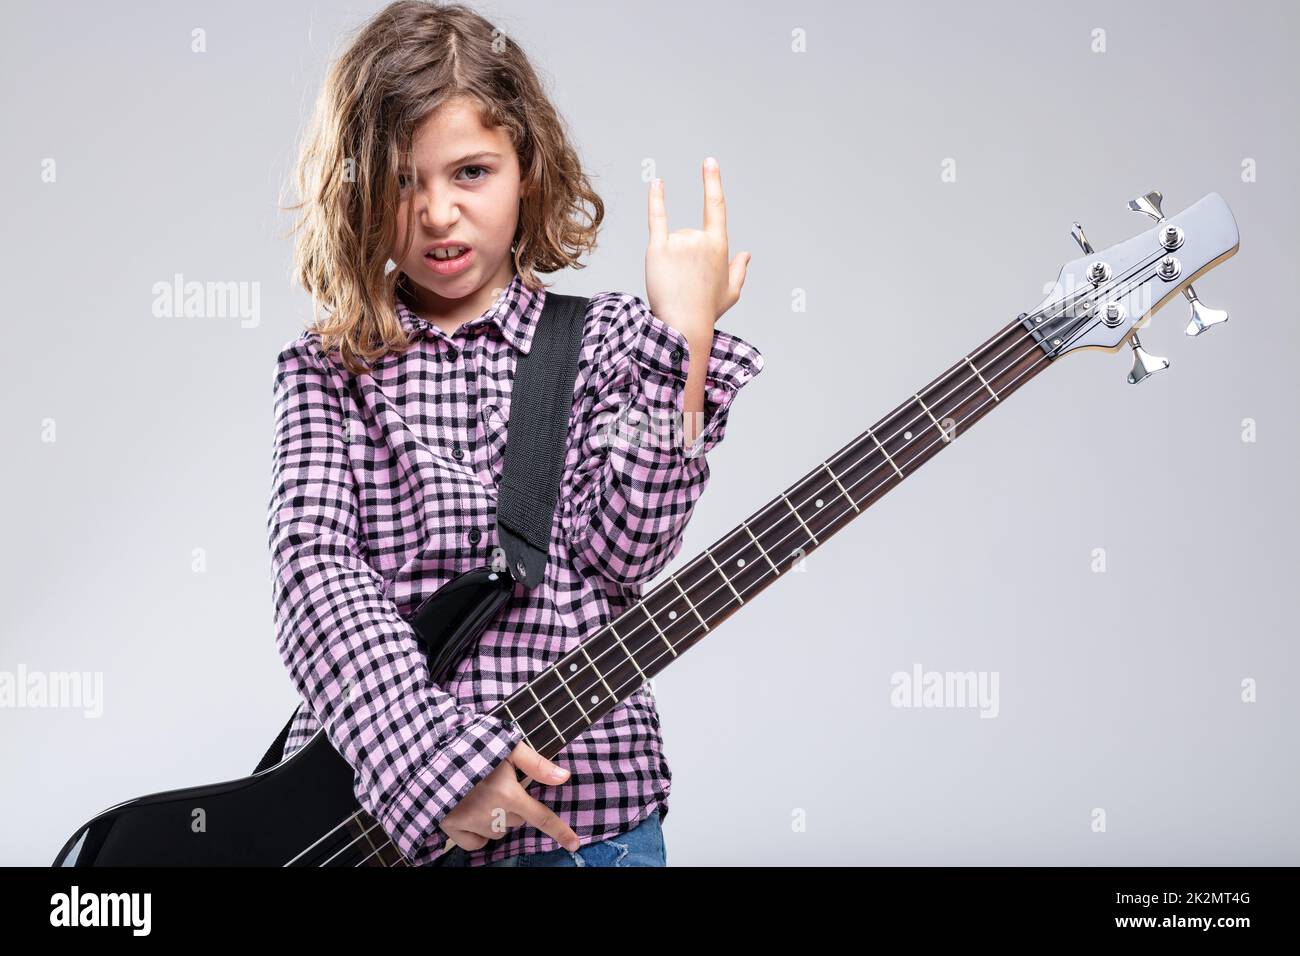 Fille jouant de la guitare donnant un signe de corne de diable Banque D'Images